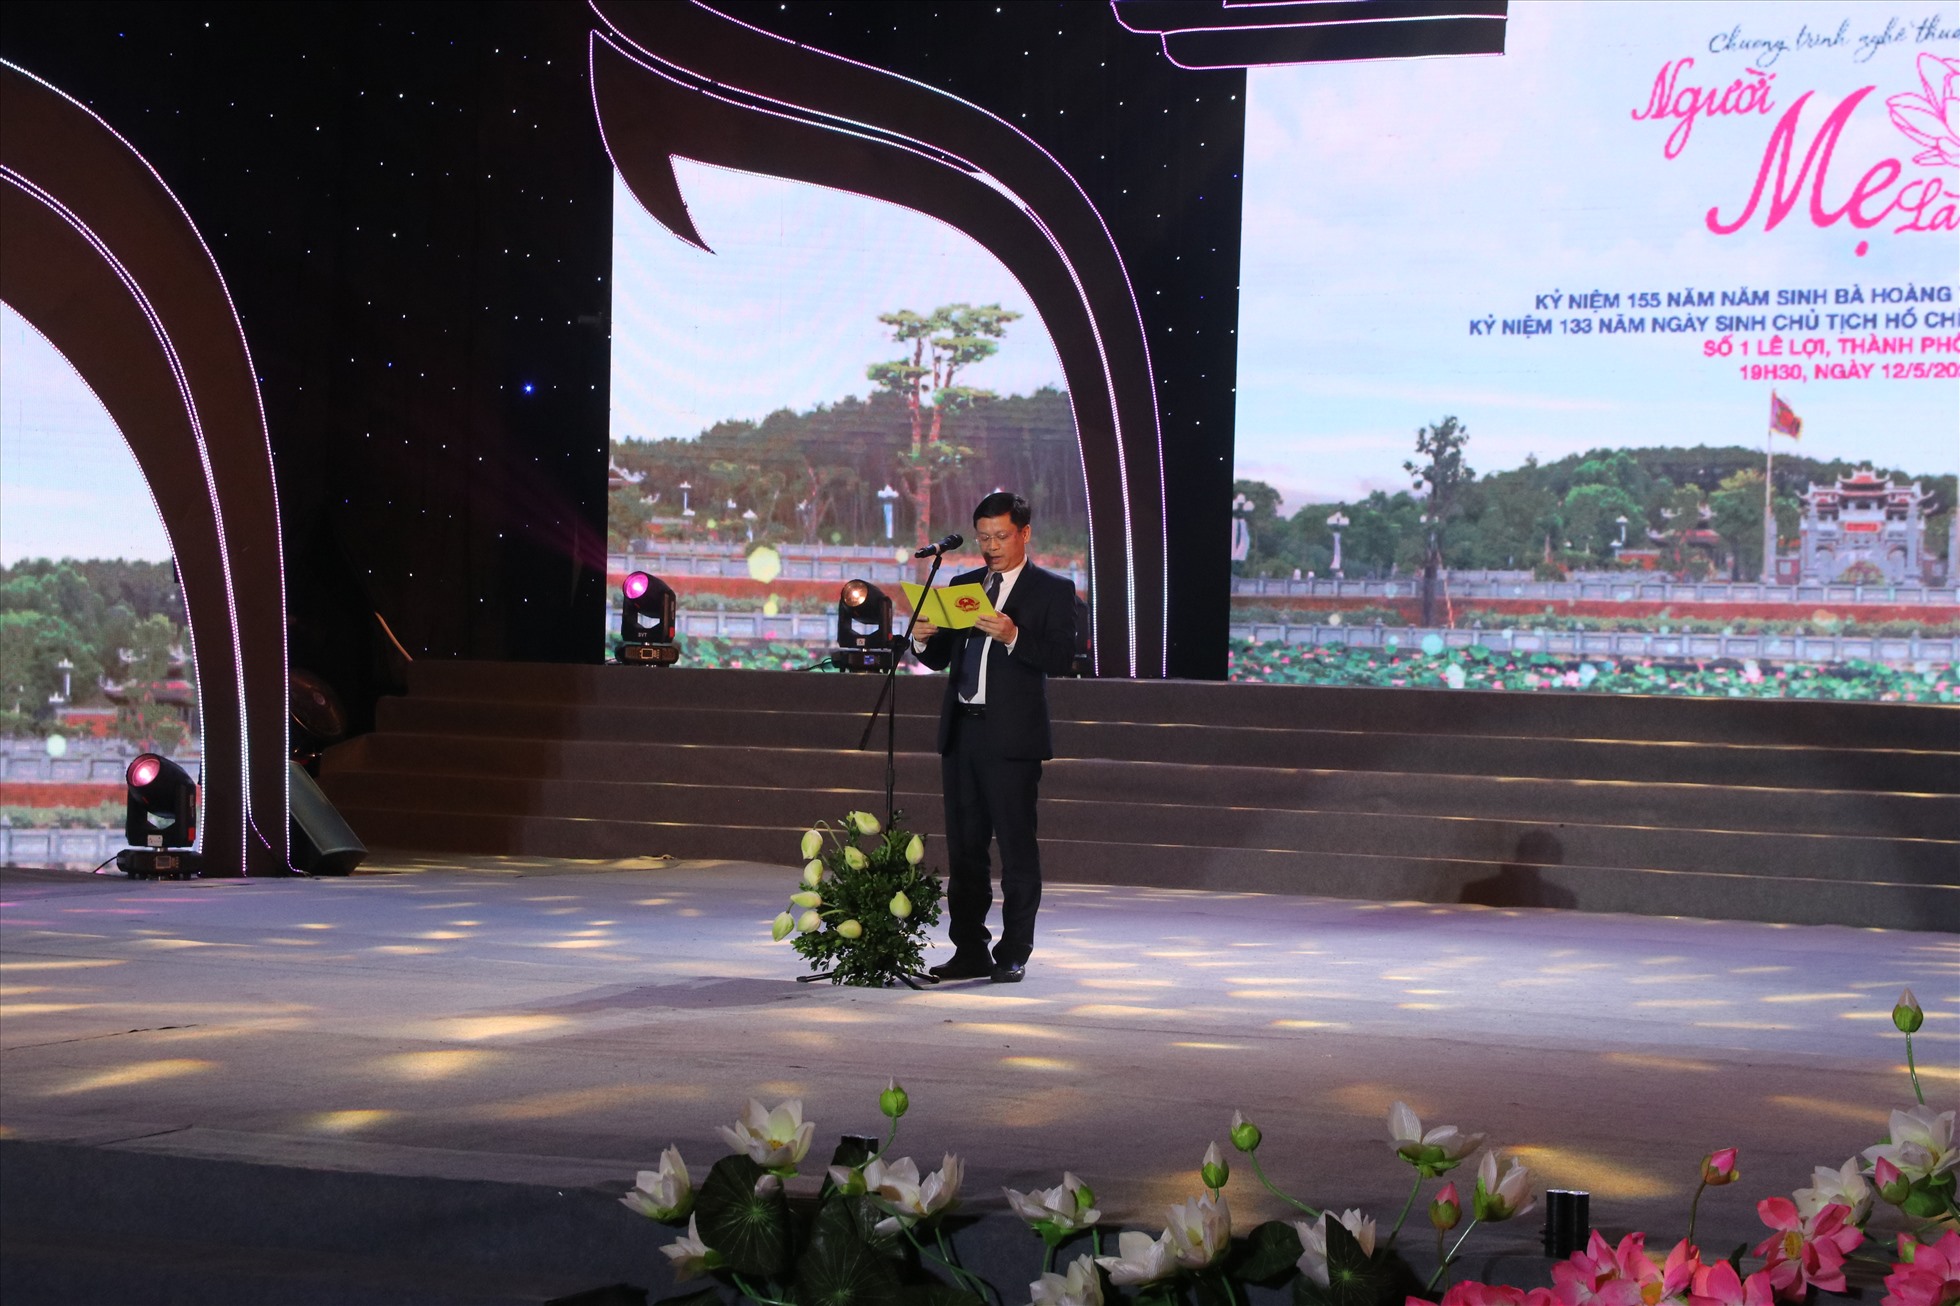 Ông Nguyễn Thanh Bình – Phó chủ tịch tỉnh Thừa Thiên Huế phát biểu tại chương trình nghệ thuật “Người mẹ Làng Sen” tại điểm cầu Thừa Thiên Huế.